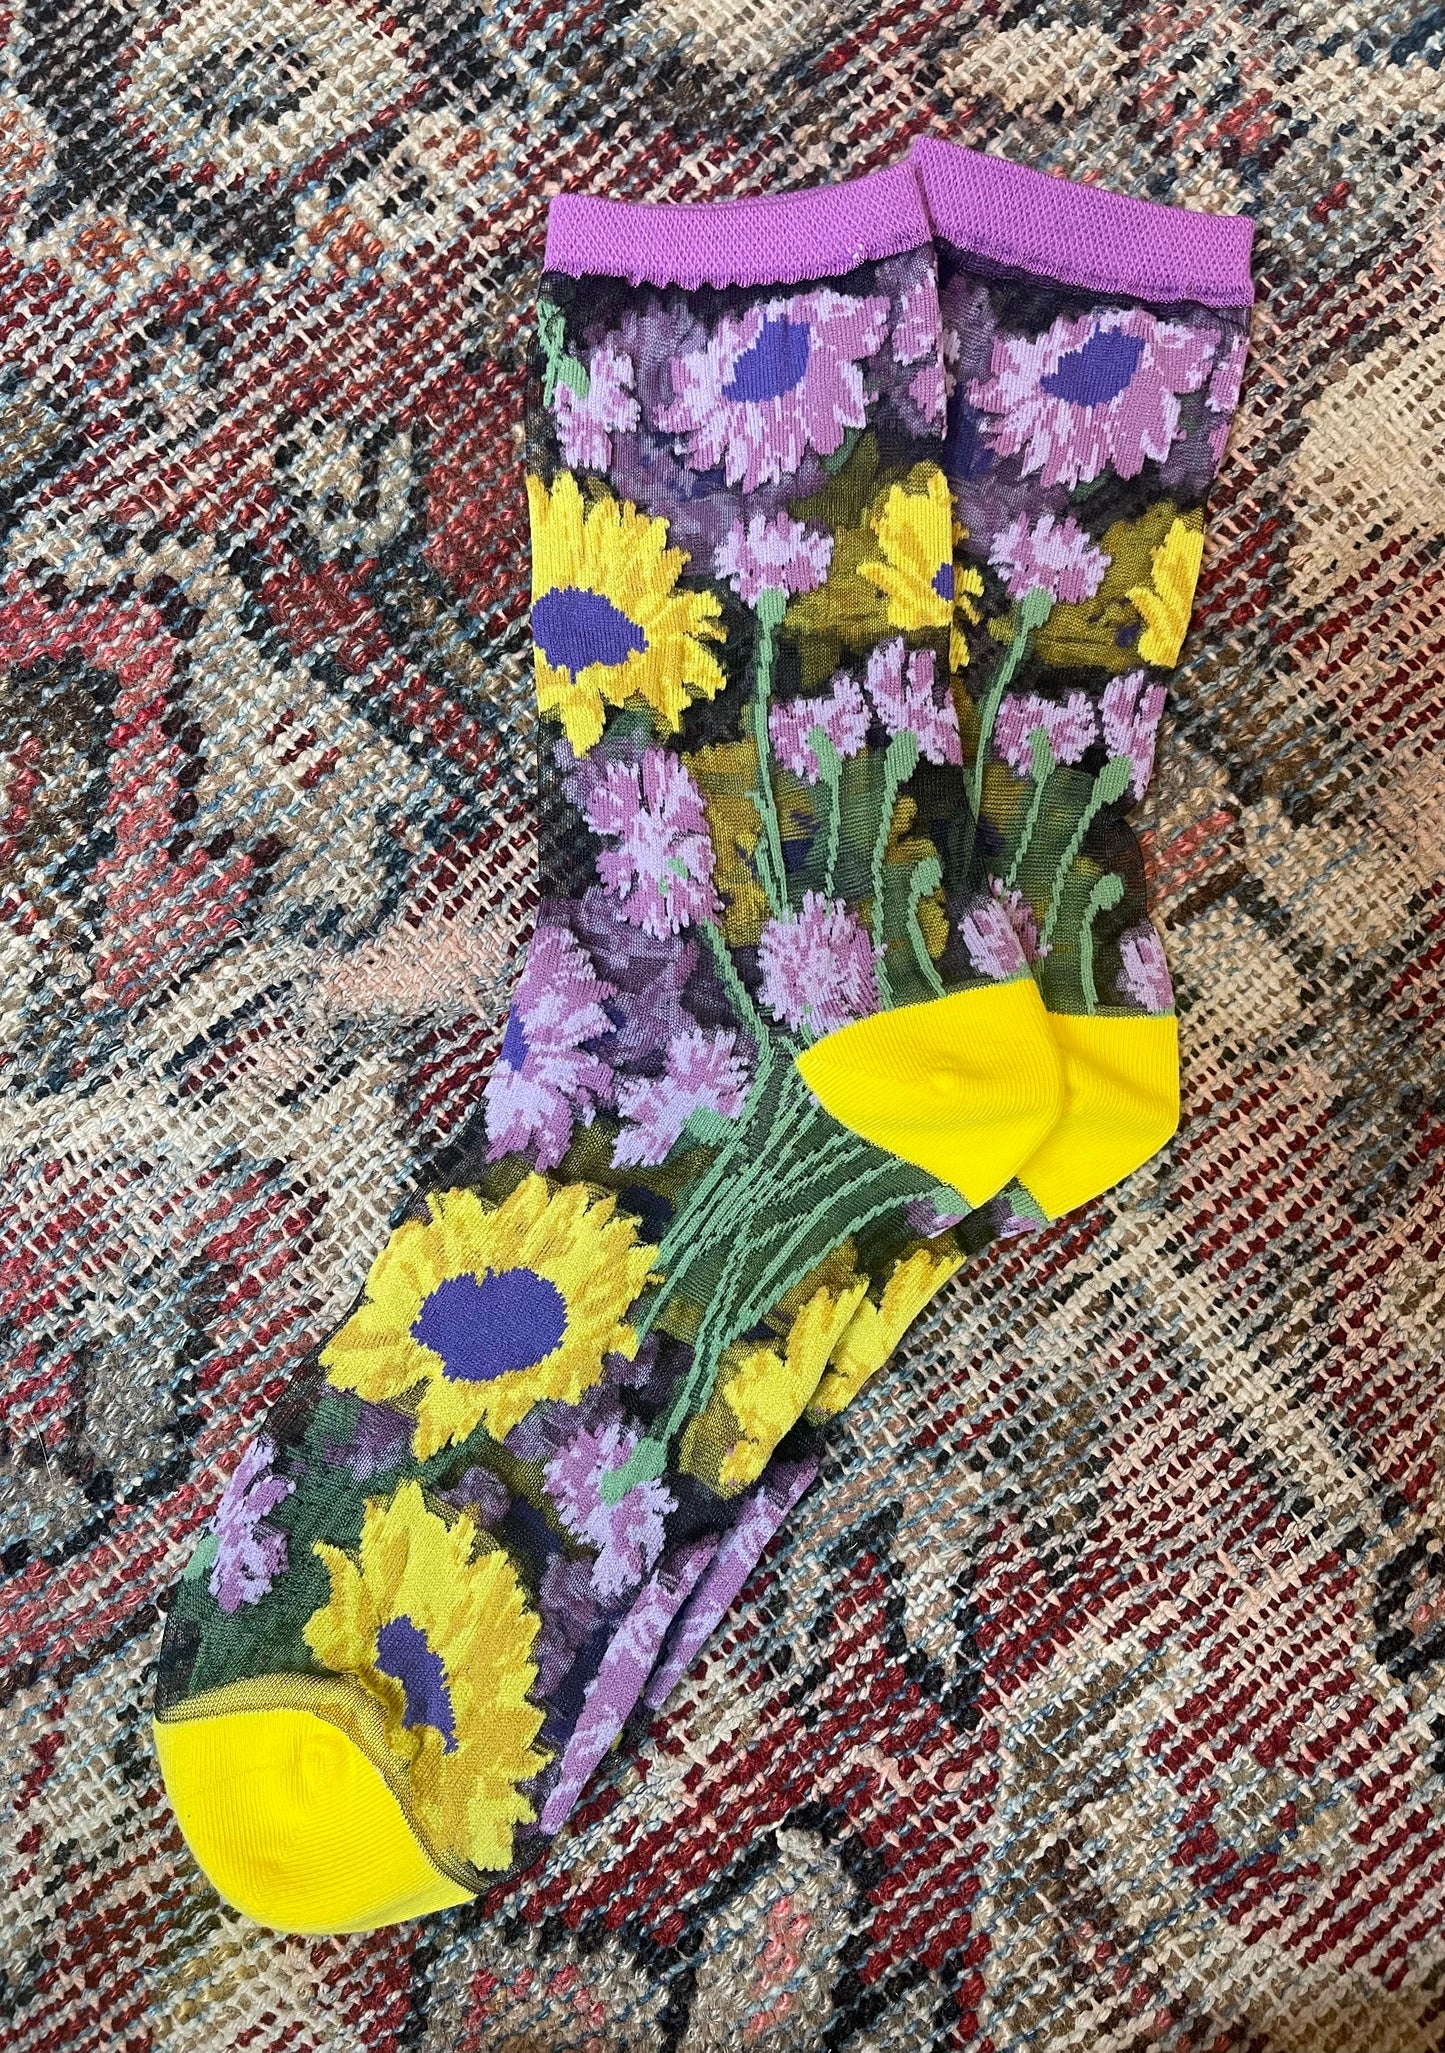 Sunflower Socks